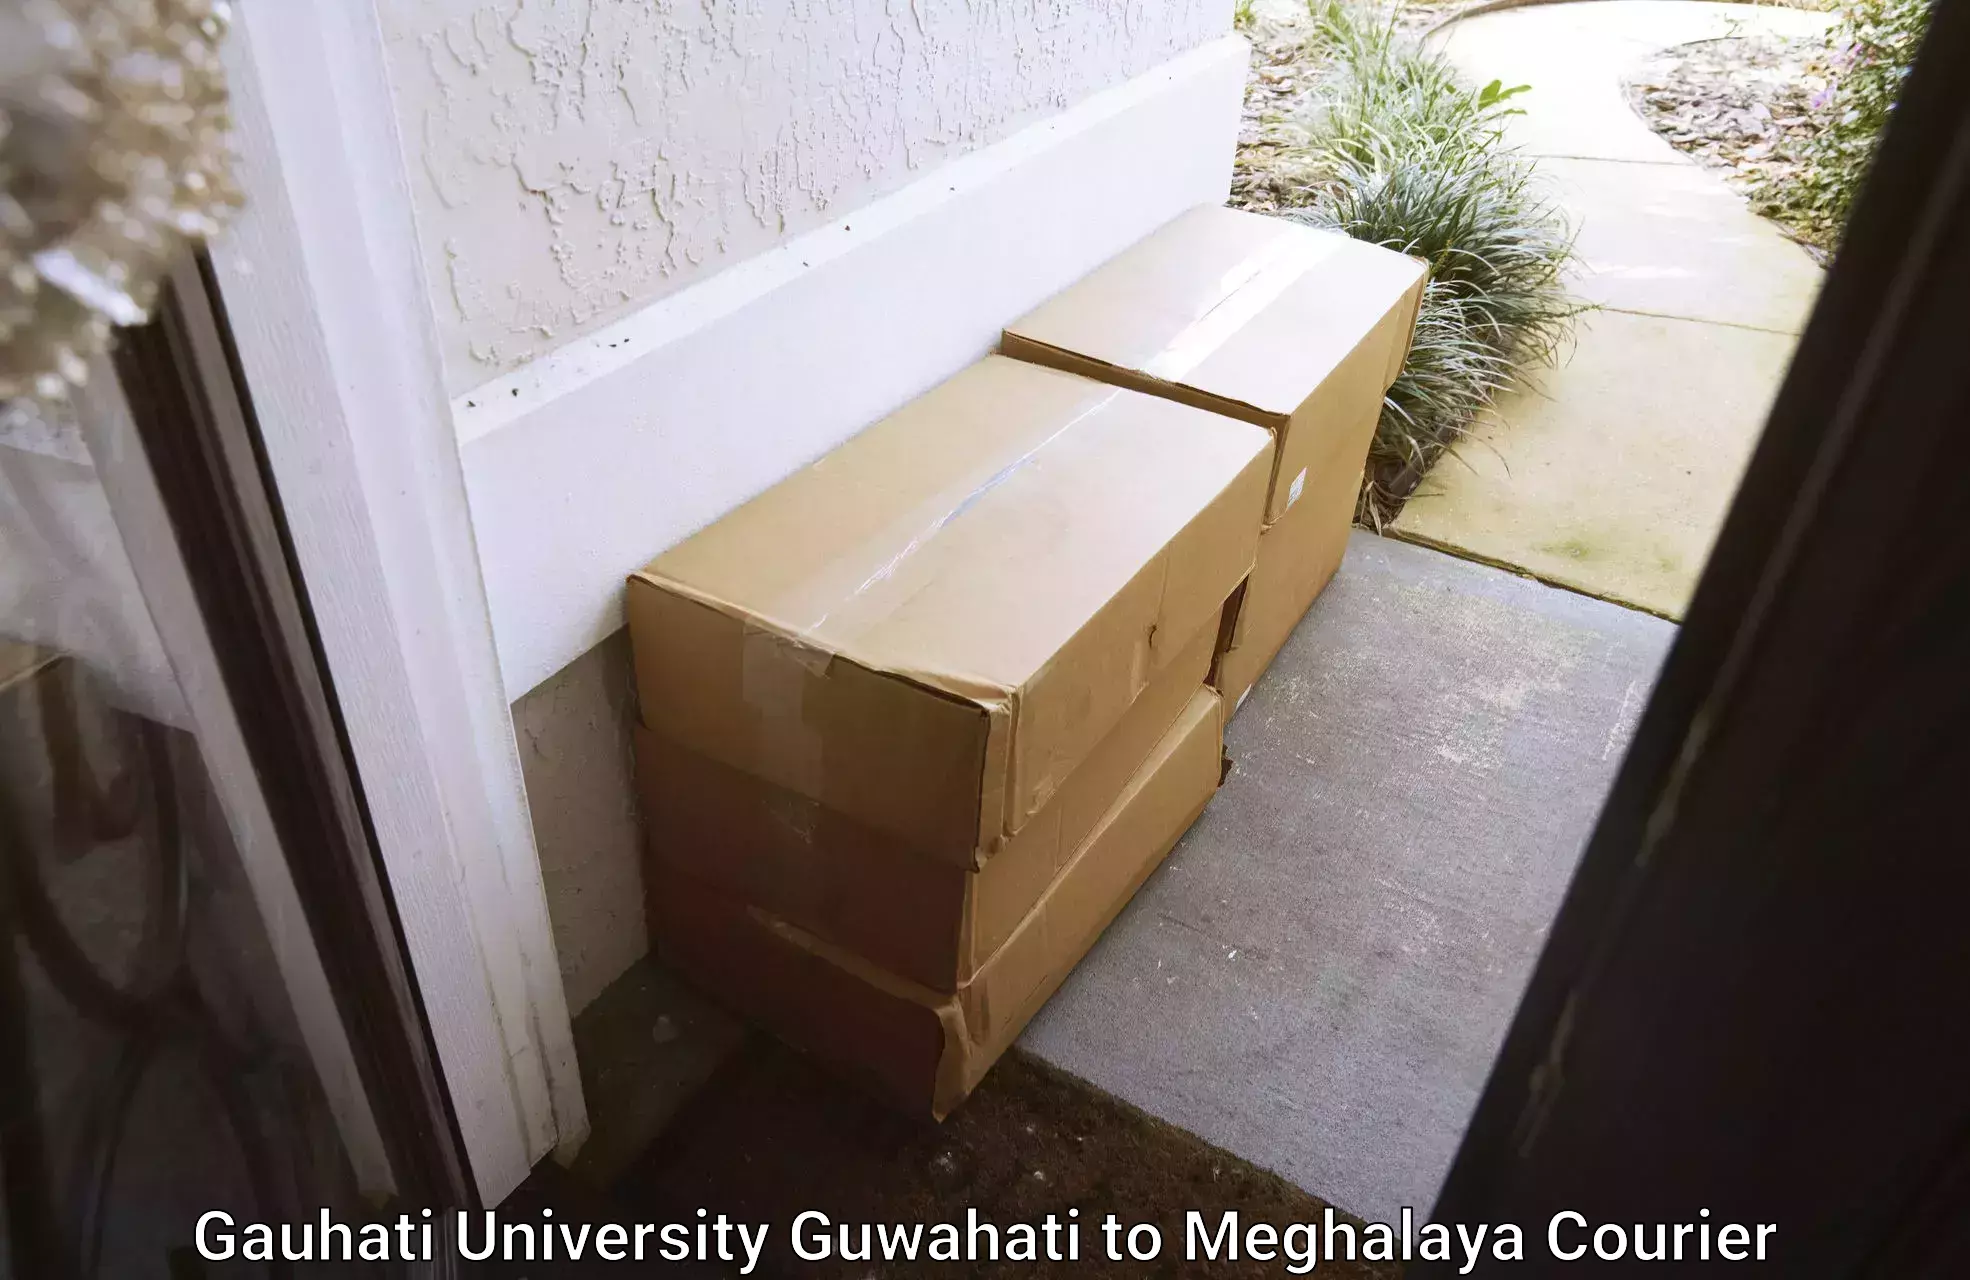 Modern courier technology Gauhati University Guwahati to NIT Meghalaya